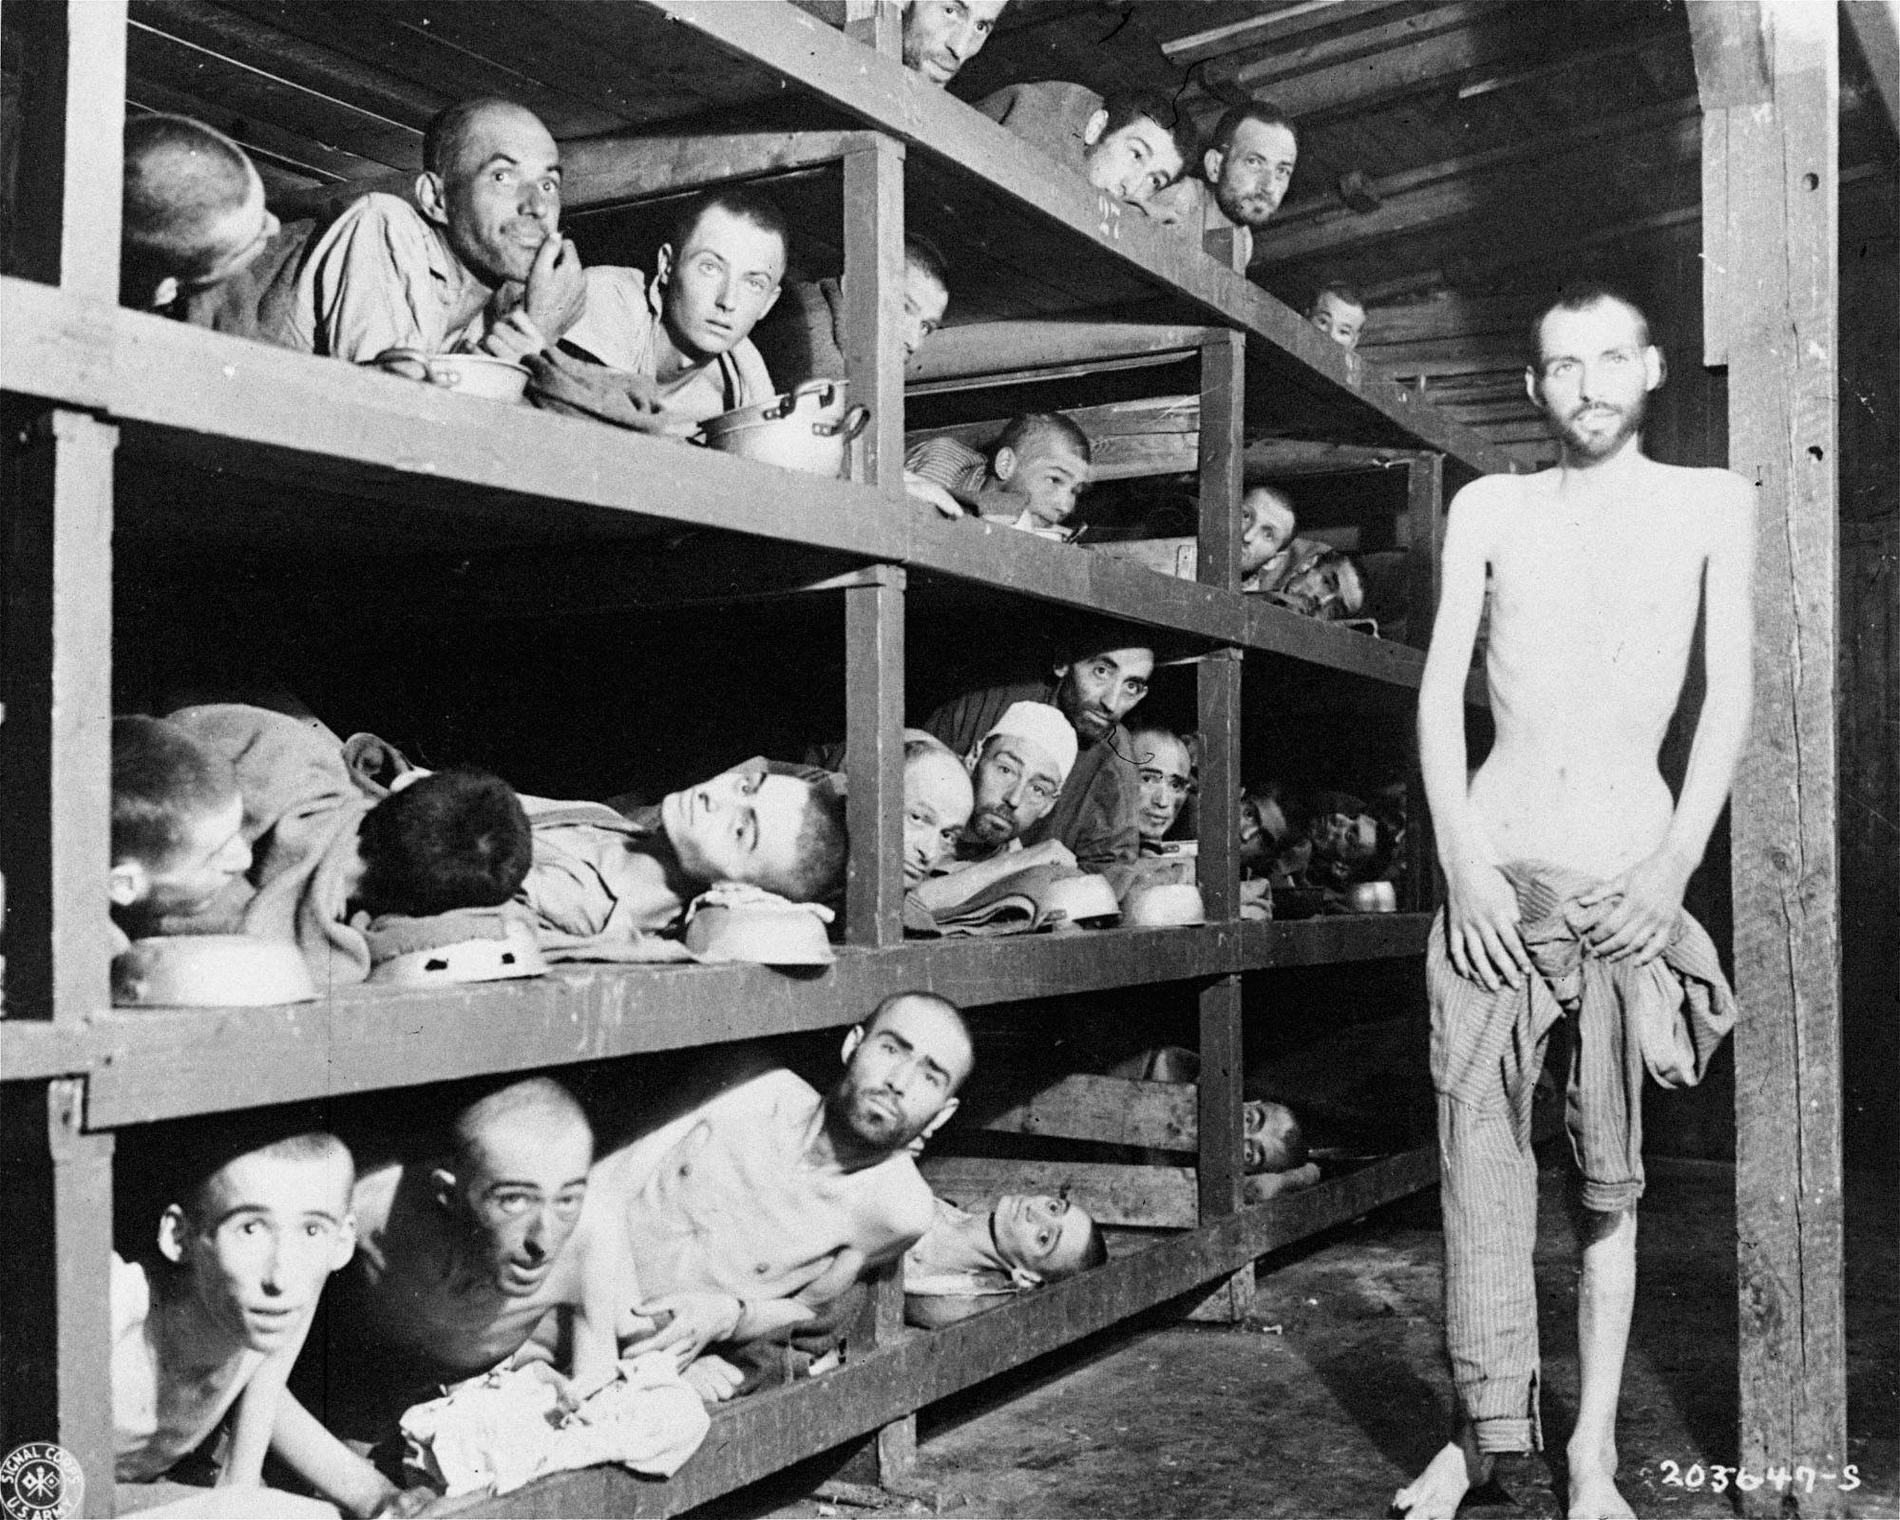 Efter Hitlers maktövertagande 1933 började man systematiskt förfölja judarna i Tyskland. På Wannseekonferensen 1942 beslutade nazisterna om "den slutgiltiga lösningen på judefrågan". De skulle utrotas. Antalet offer för Förintelsen uppskattas till omkring 6 miljoner. De flesta gasades ihjäl och kremerades i koncentrationsläger. Bilden visar fångar i koncentrationslägret Buchenwald.